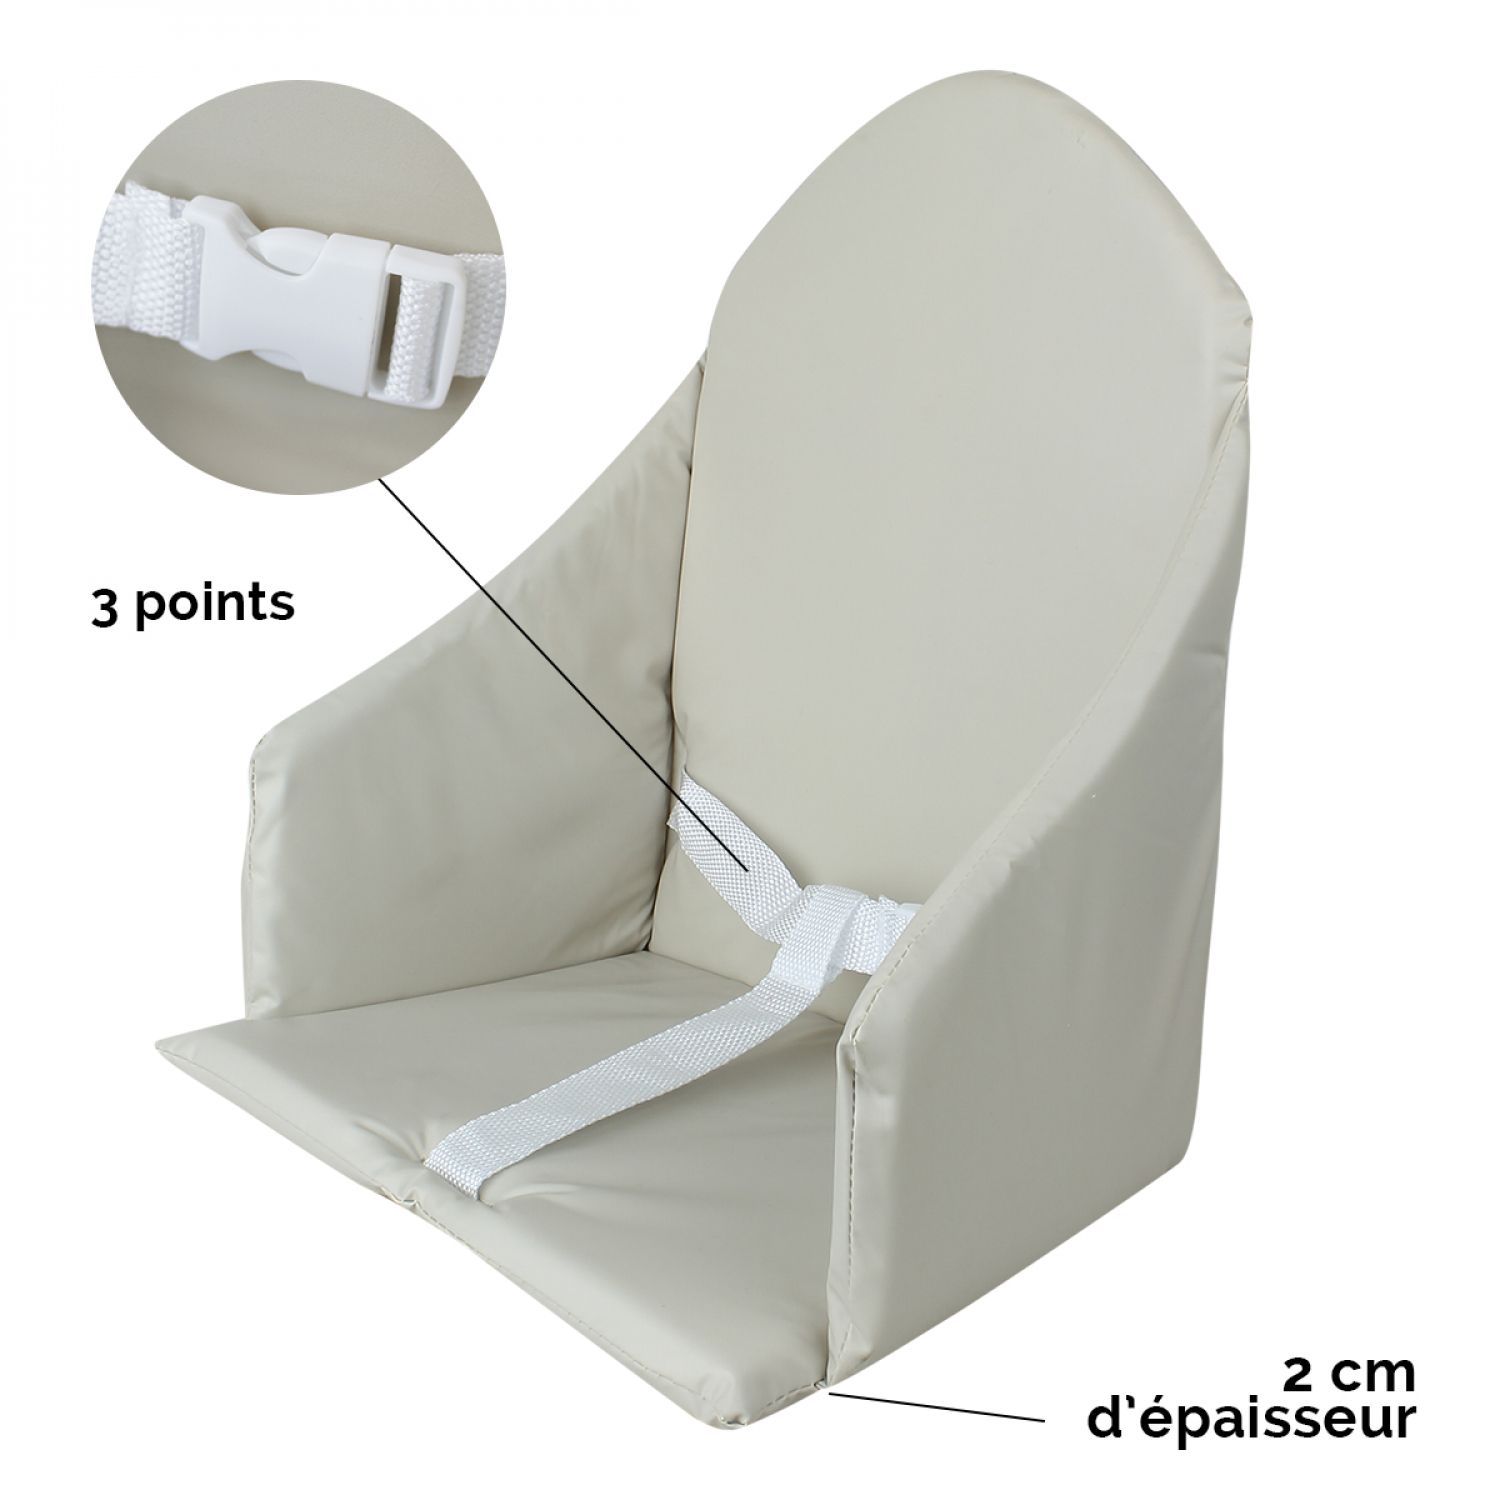 COUSSIN Chaise haute POUR Fauteuils TRANSATS Amovible cm. 45X115X5 QUALITÉ  EXTÉRIEURE Extra